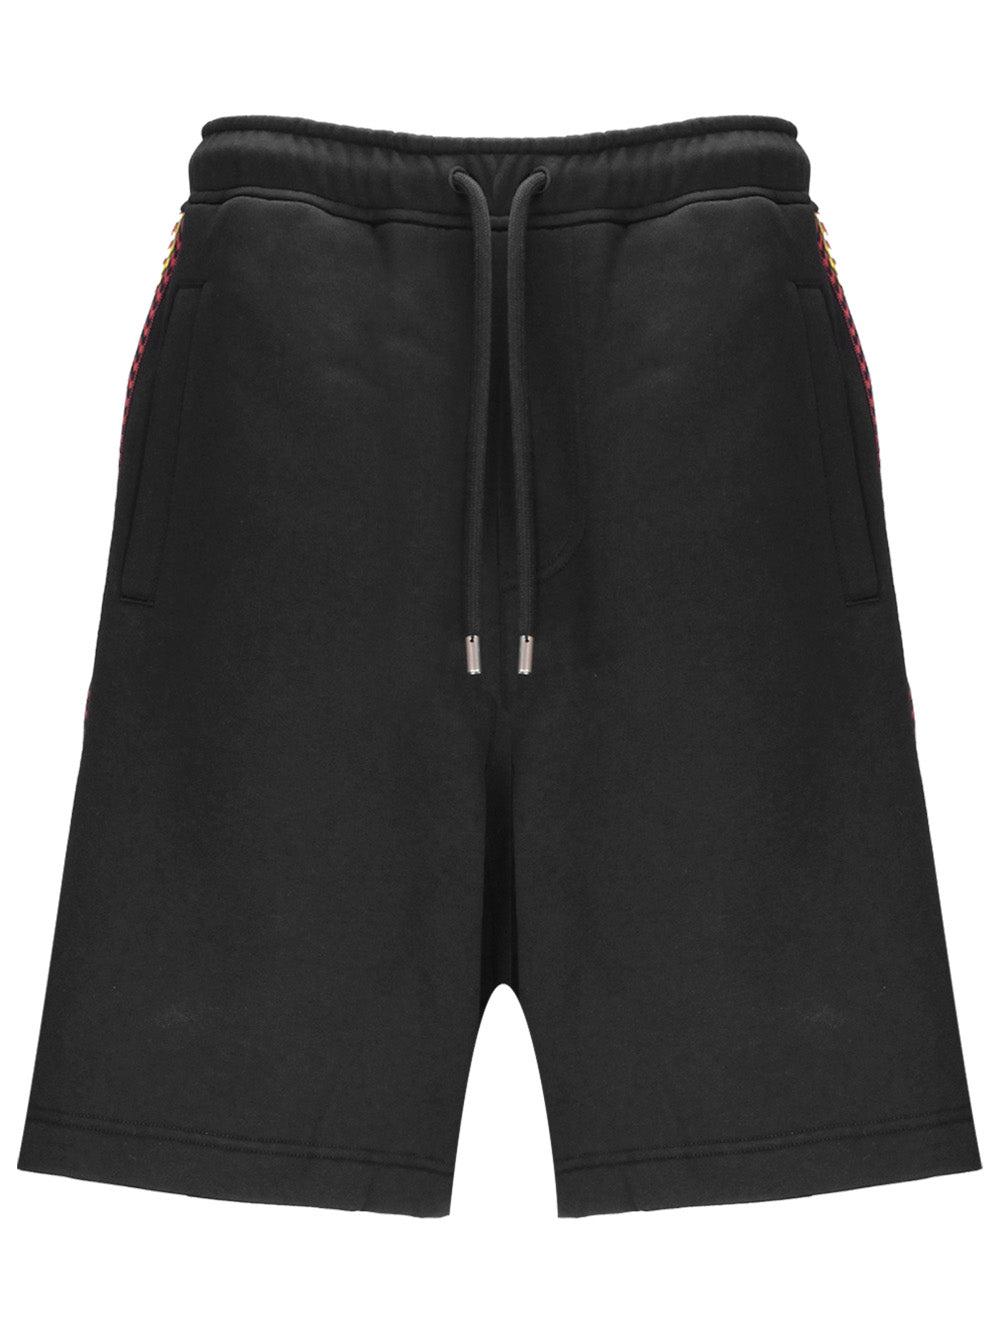 Lanvin RMTR0064 Man Black Shorts - Zuklat